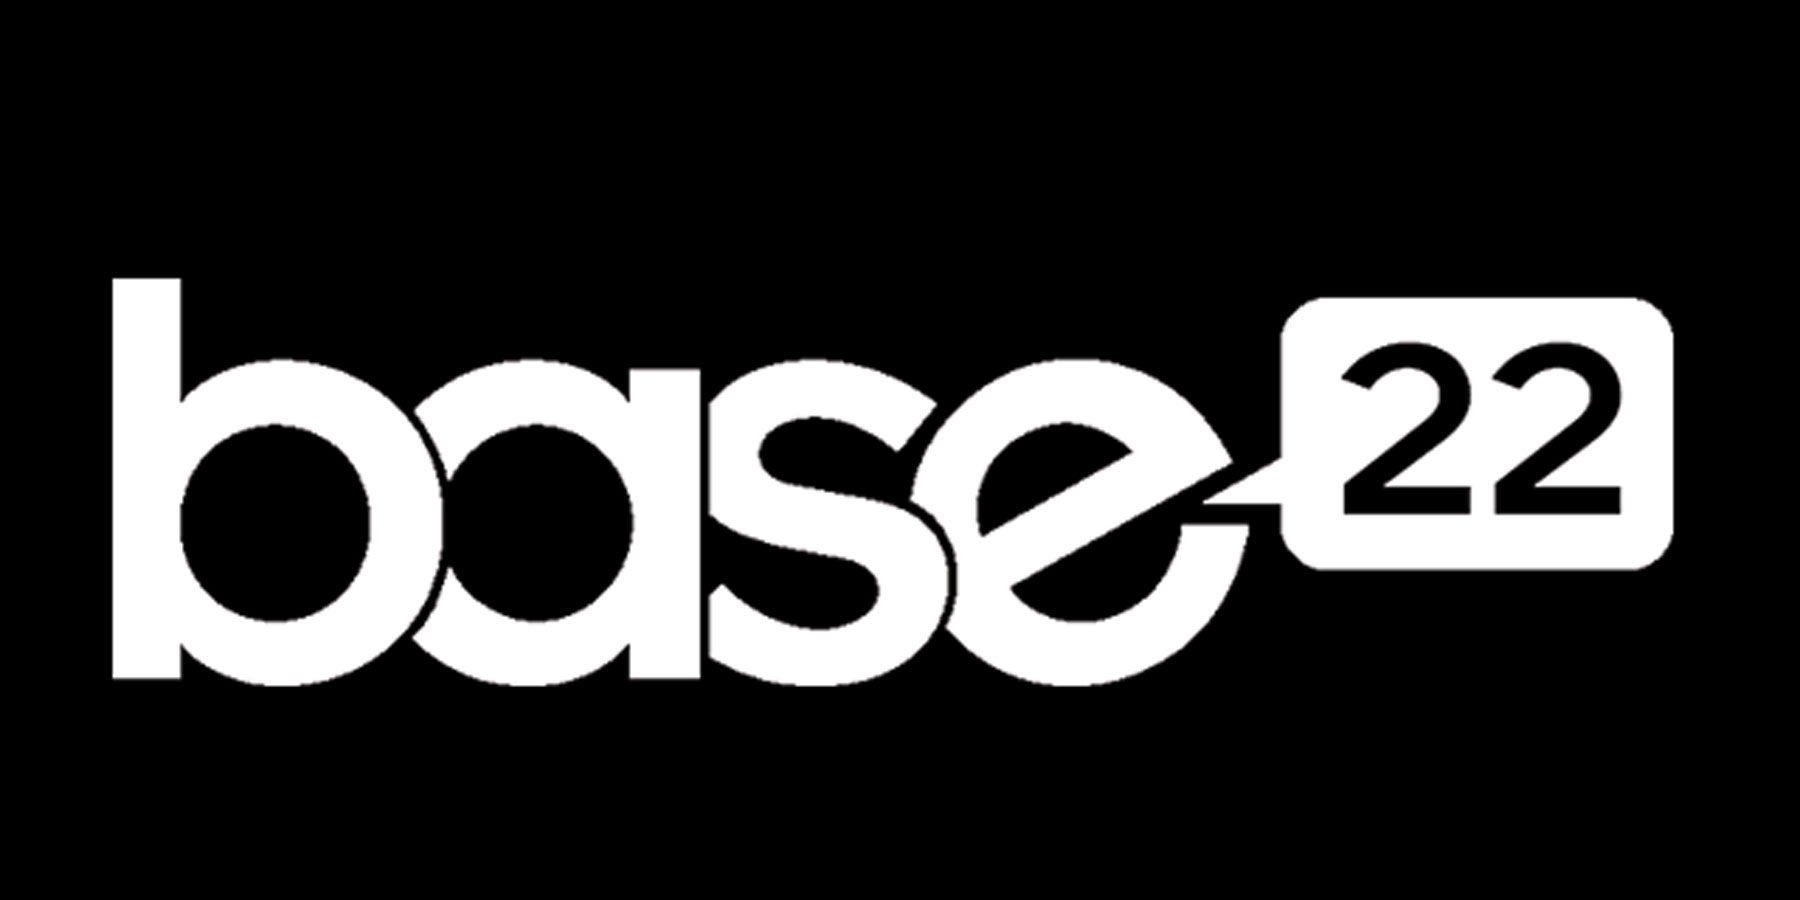 Base 22 – Logo inspiration